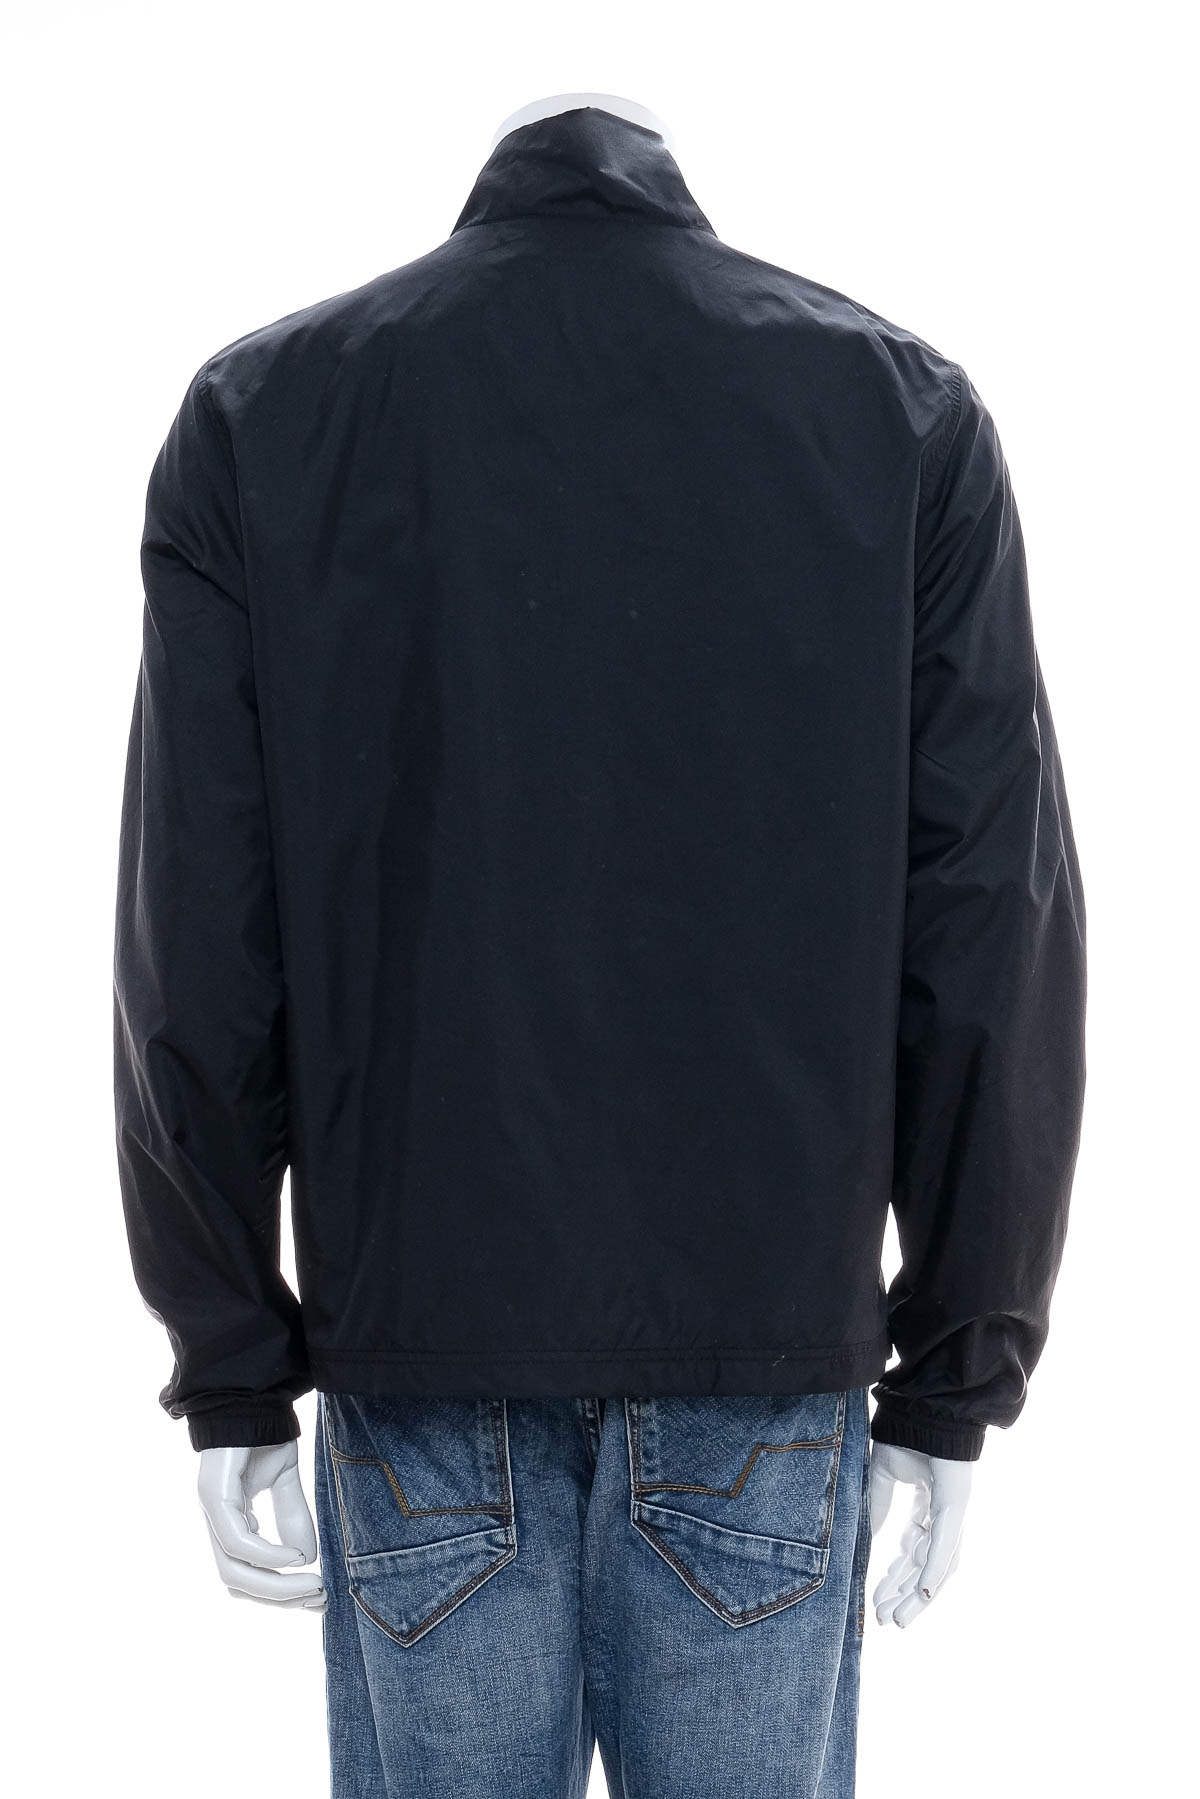 Men's jacket - NIKE - 1